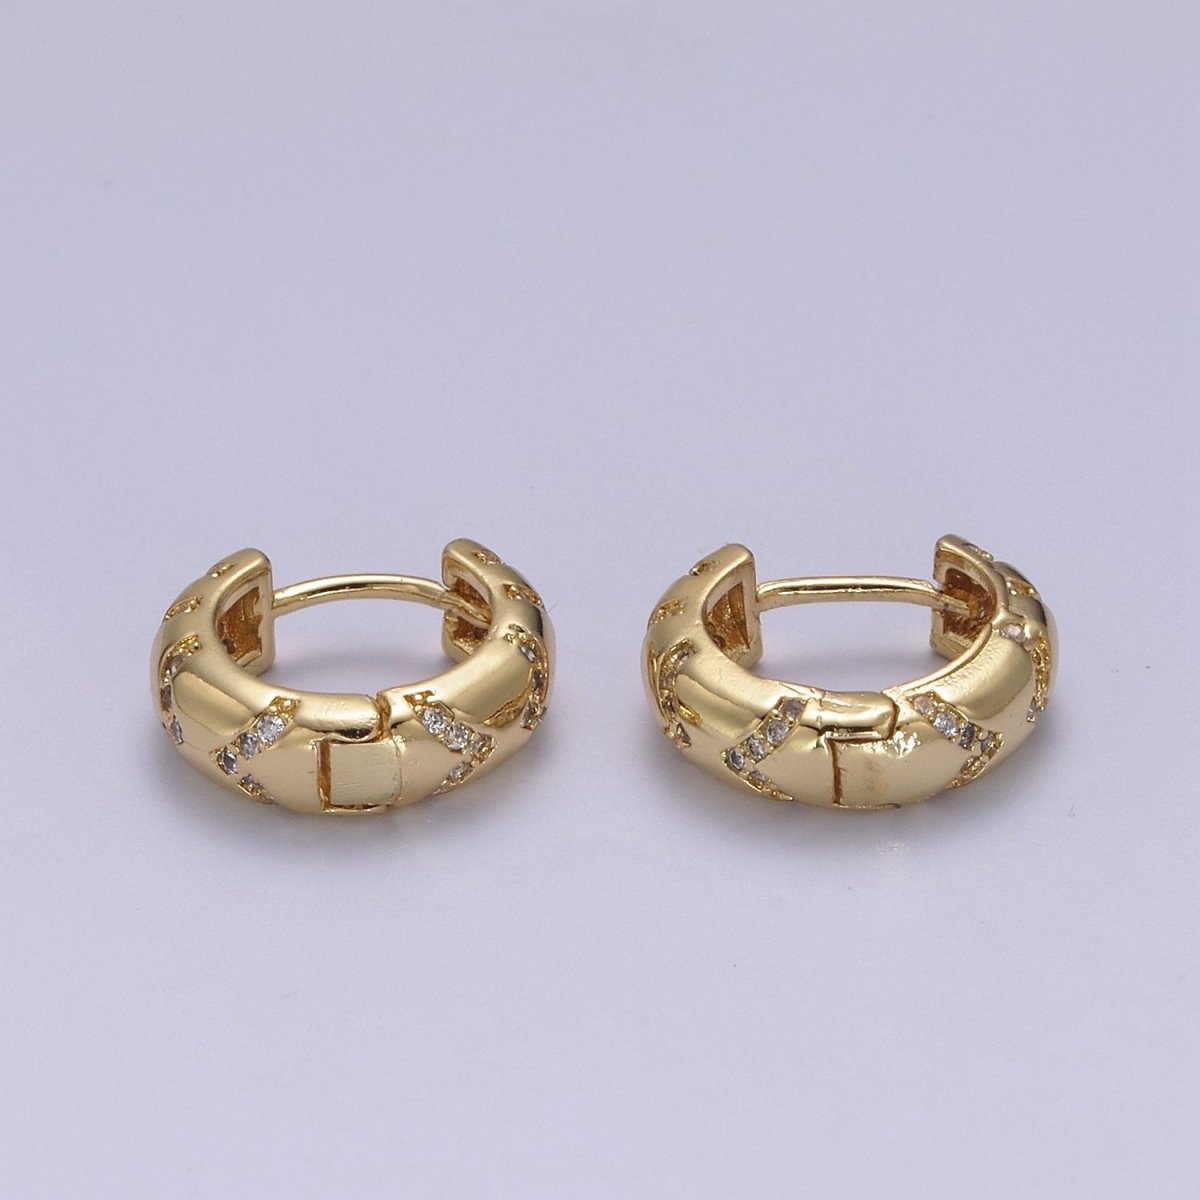 Hinged Gold Huggie Hoop Earrings 16mm Small Huggie Hoops, Dome Hoops, Gold Earrings for Women T-361 - DLUXCA